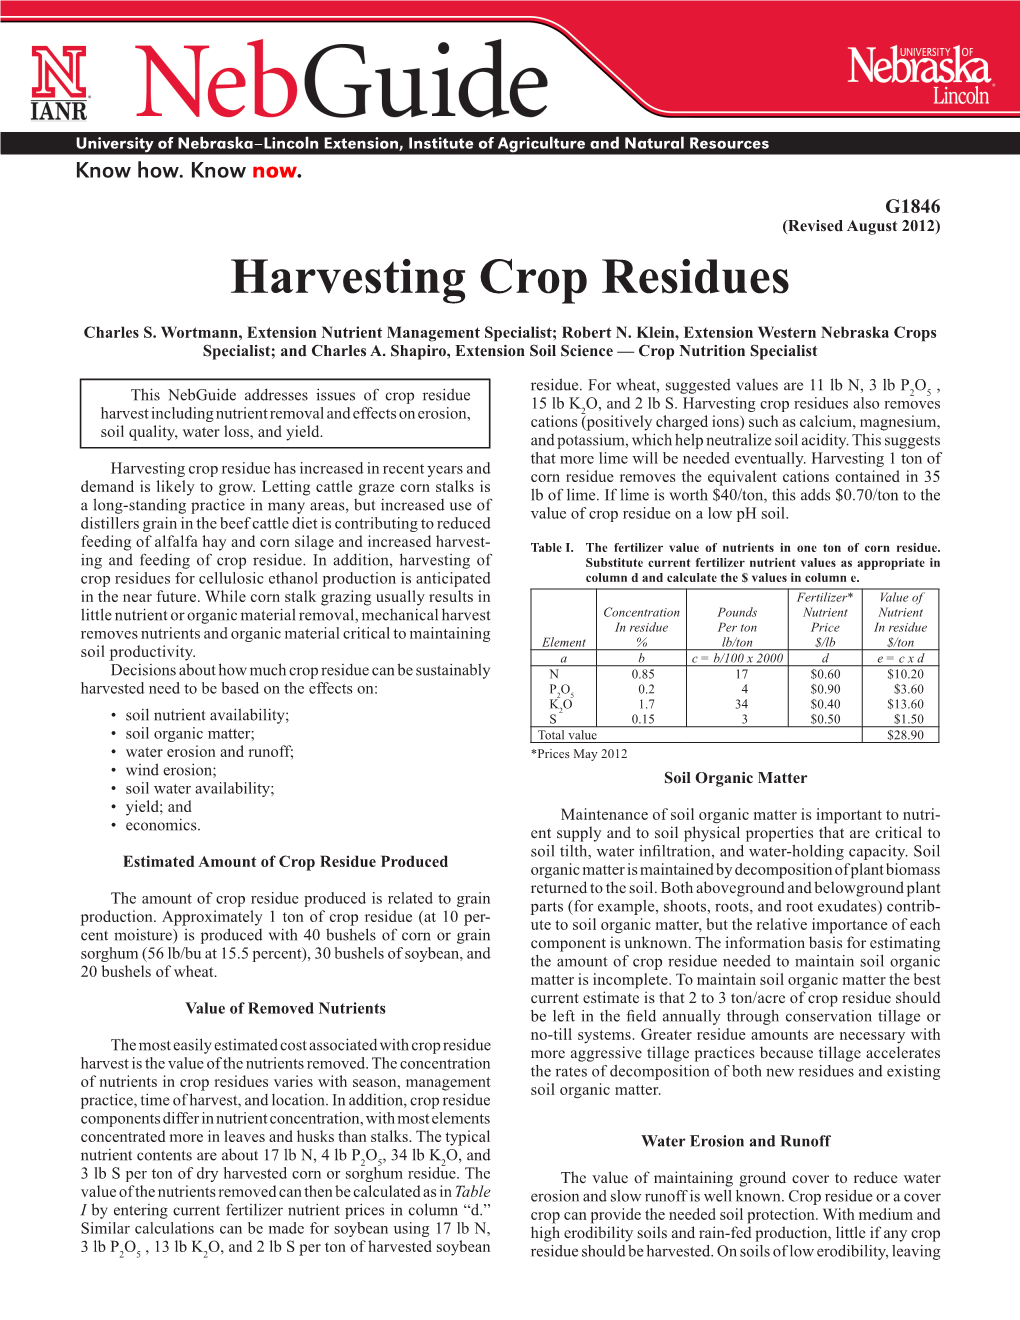 Harvesting Crop Residues